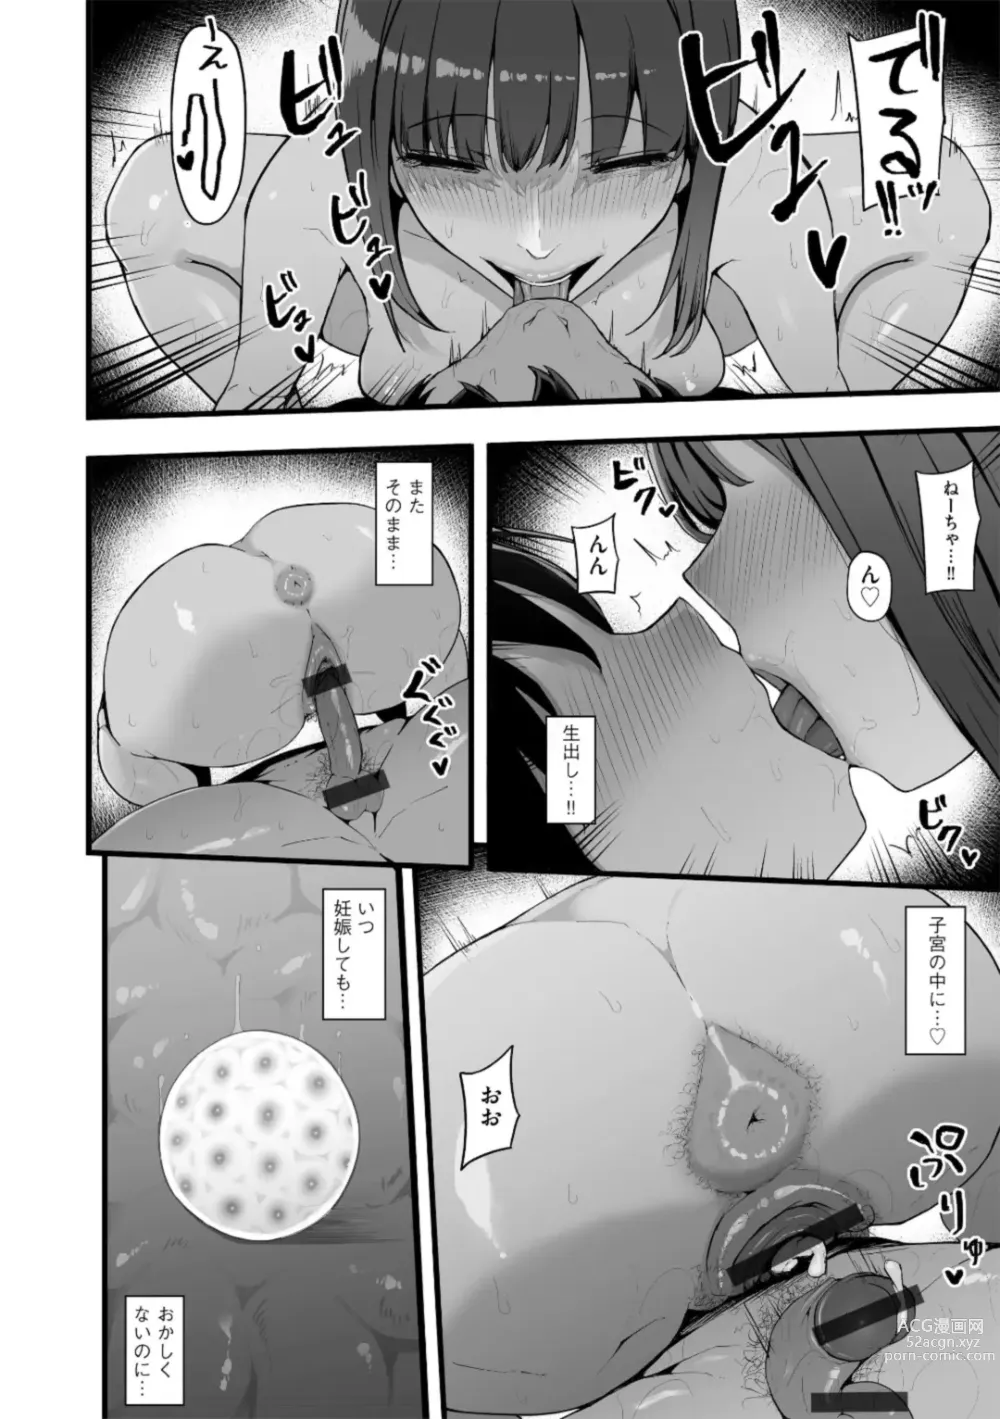 Page 14 of manga Honou ni wa Katenakatta 3